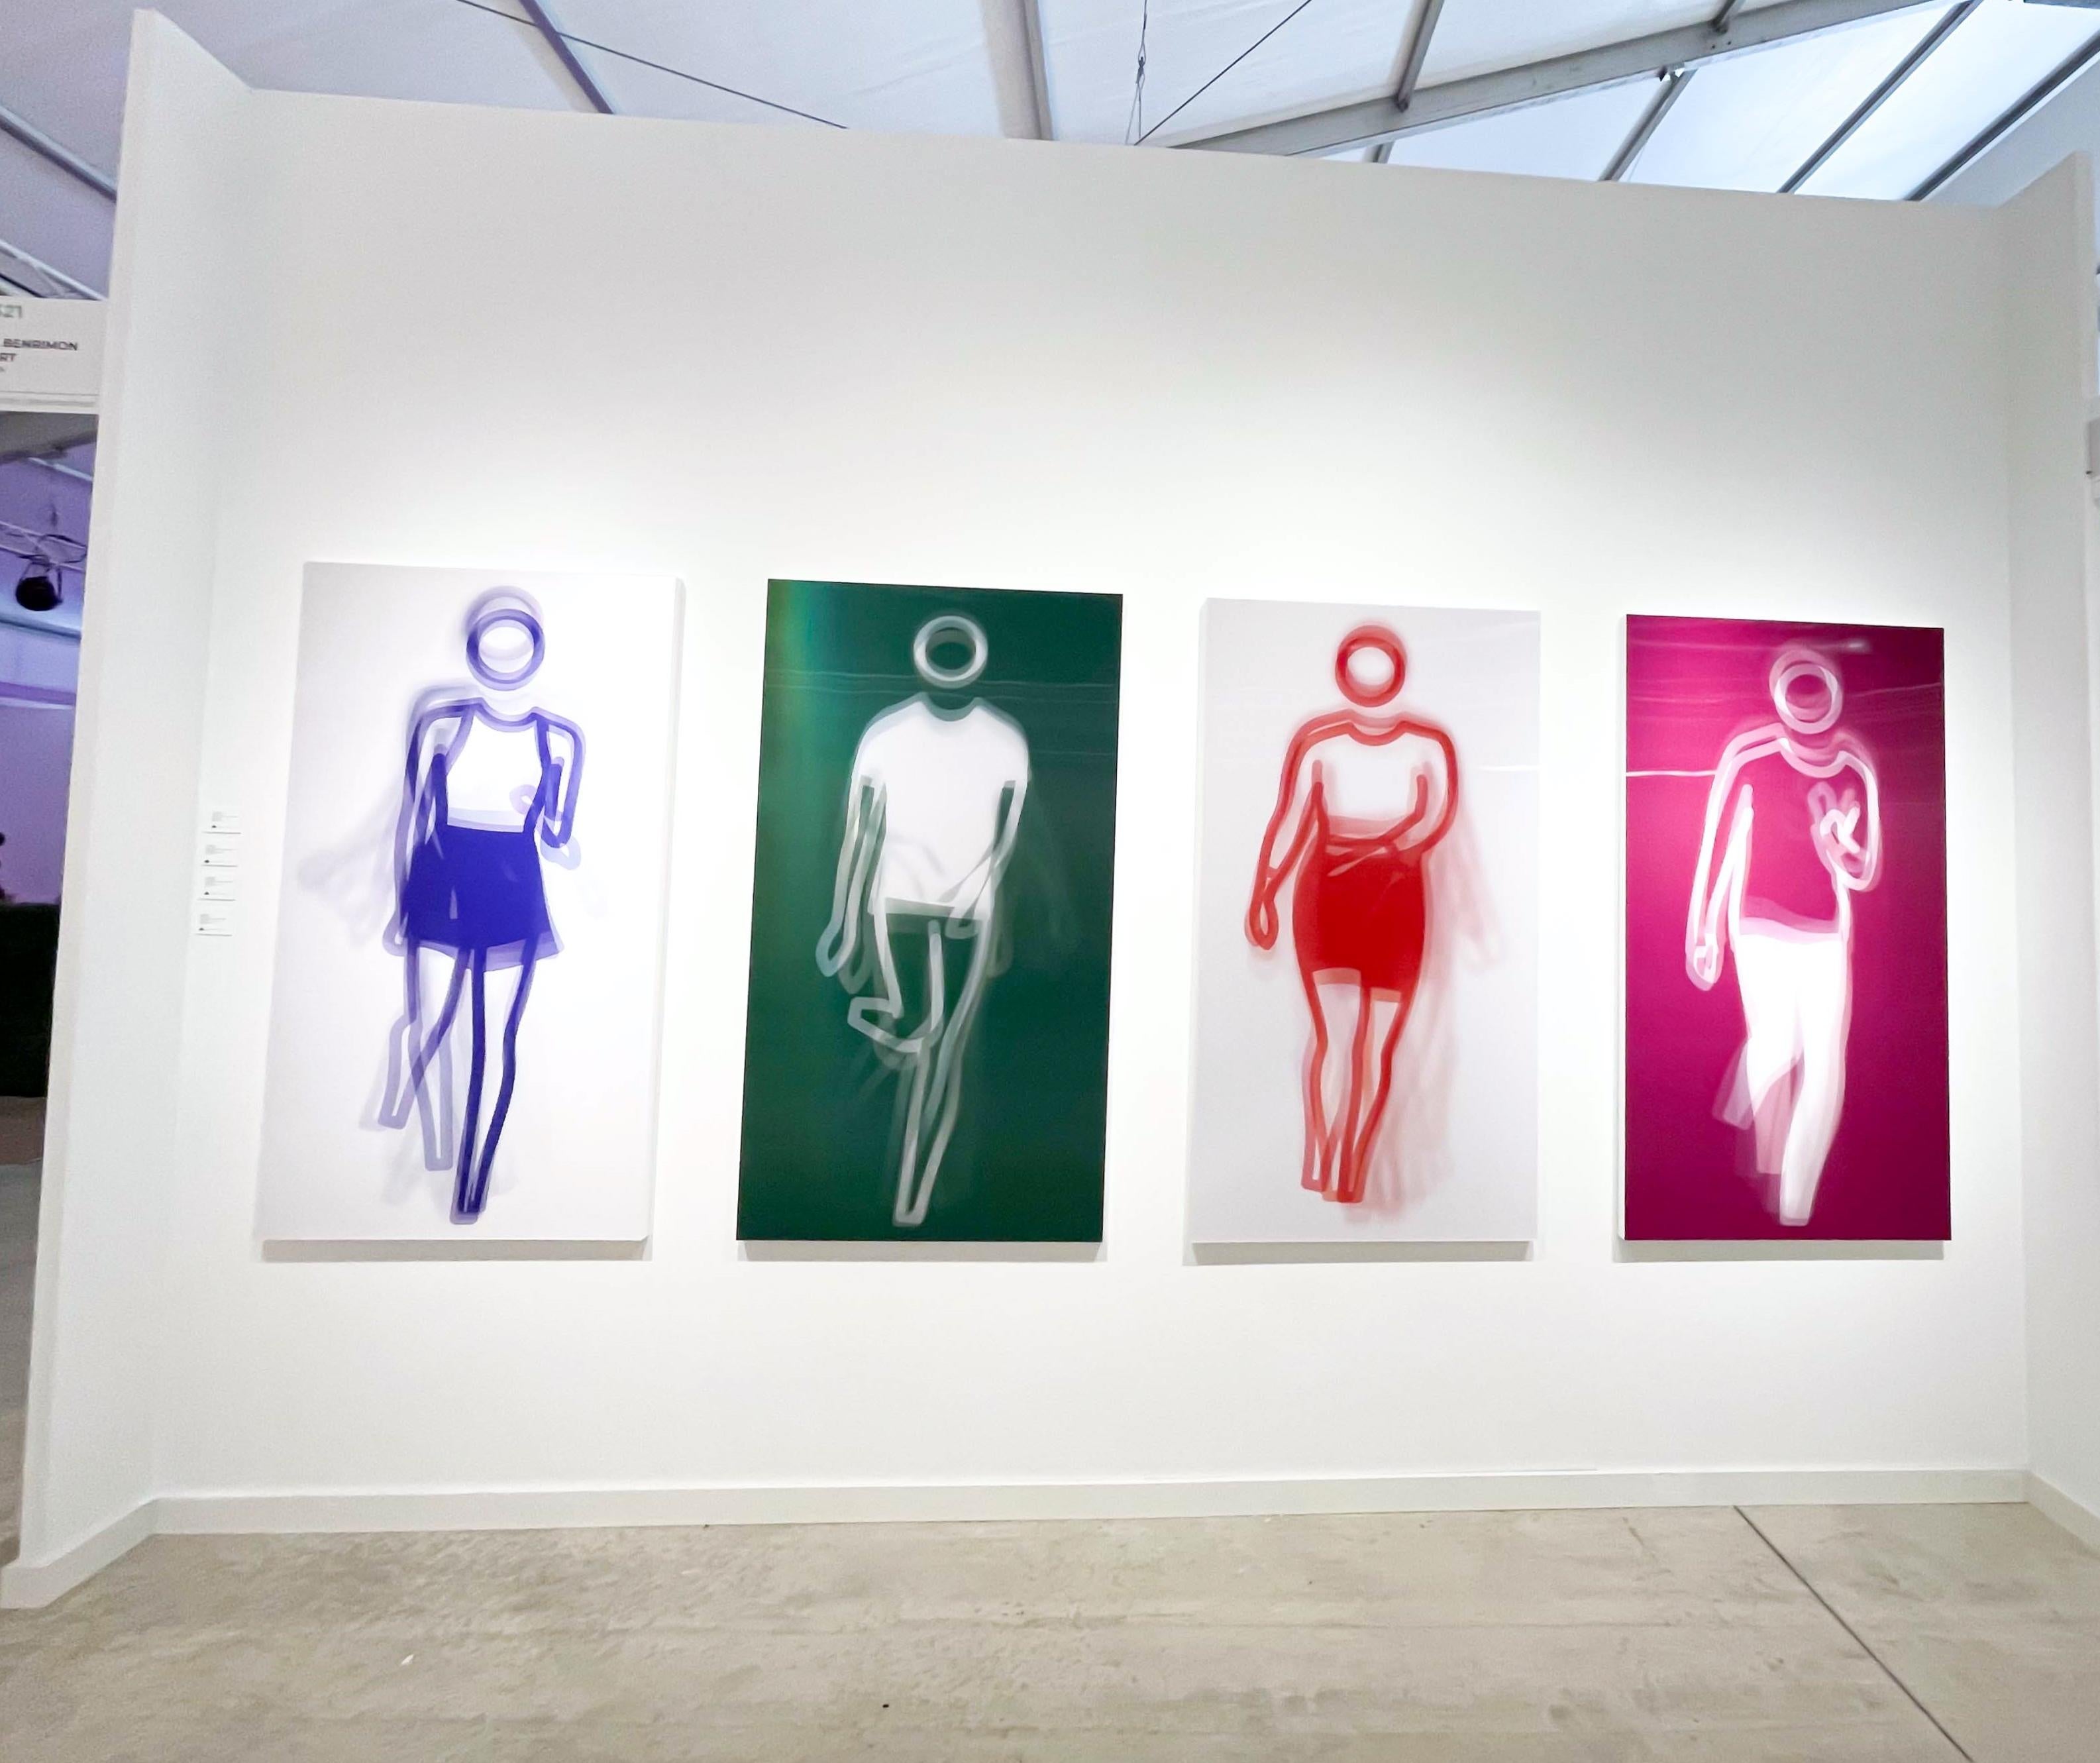 Bewegte große zeitgenössische Acryltafel mit tanzender Figur, vier Farben, Tanz 3 (Pop-Art), Print, von Julian Opie